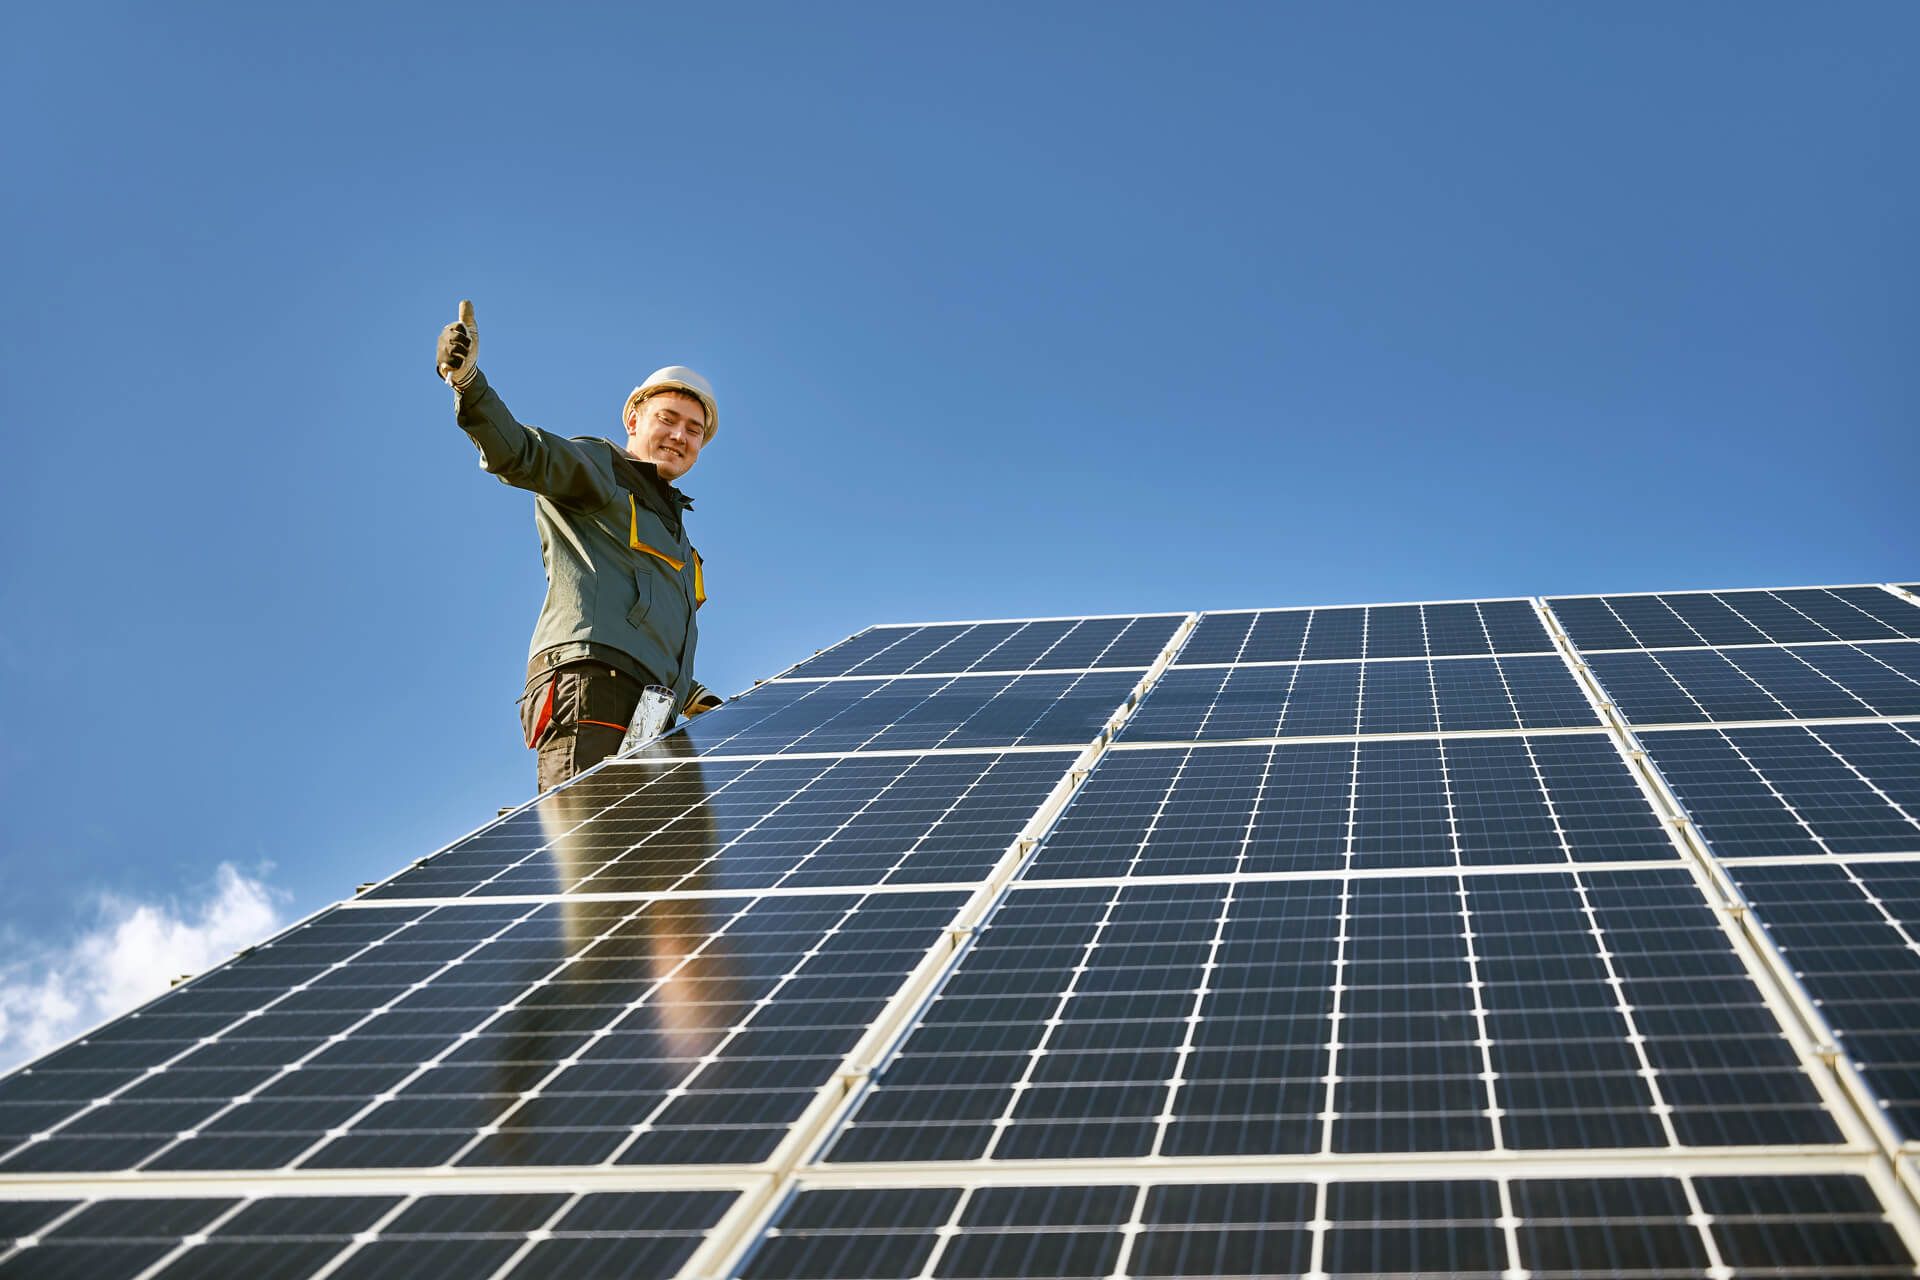 Installation einer Solaranlage, Handwerker zeigt Daumen-hoch